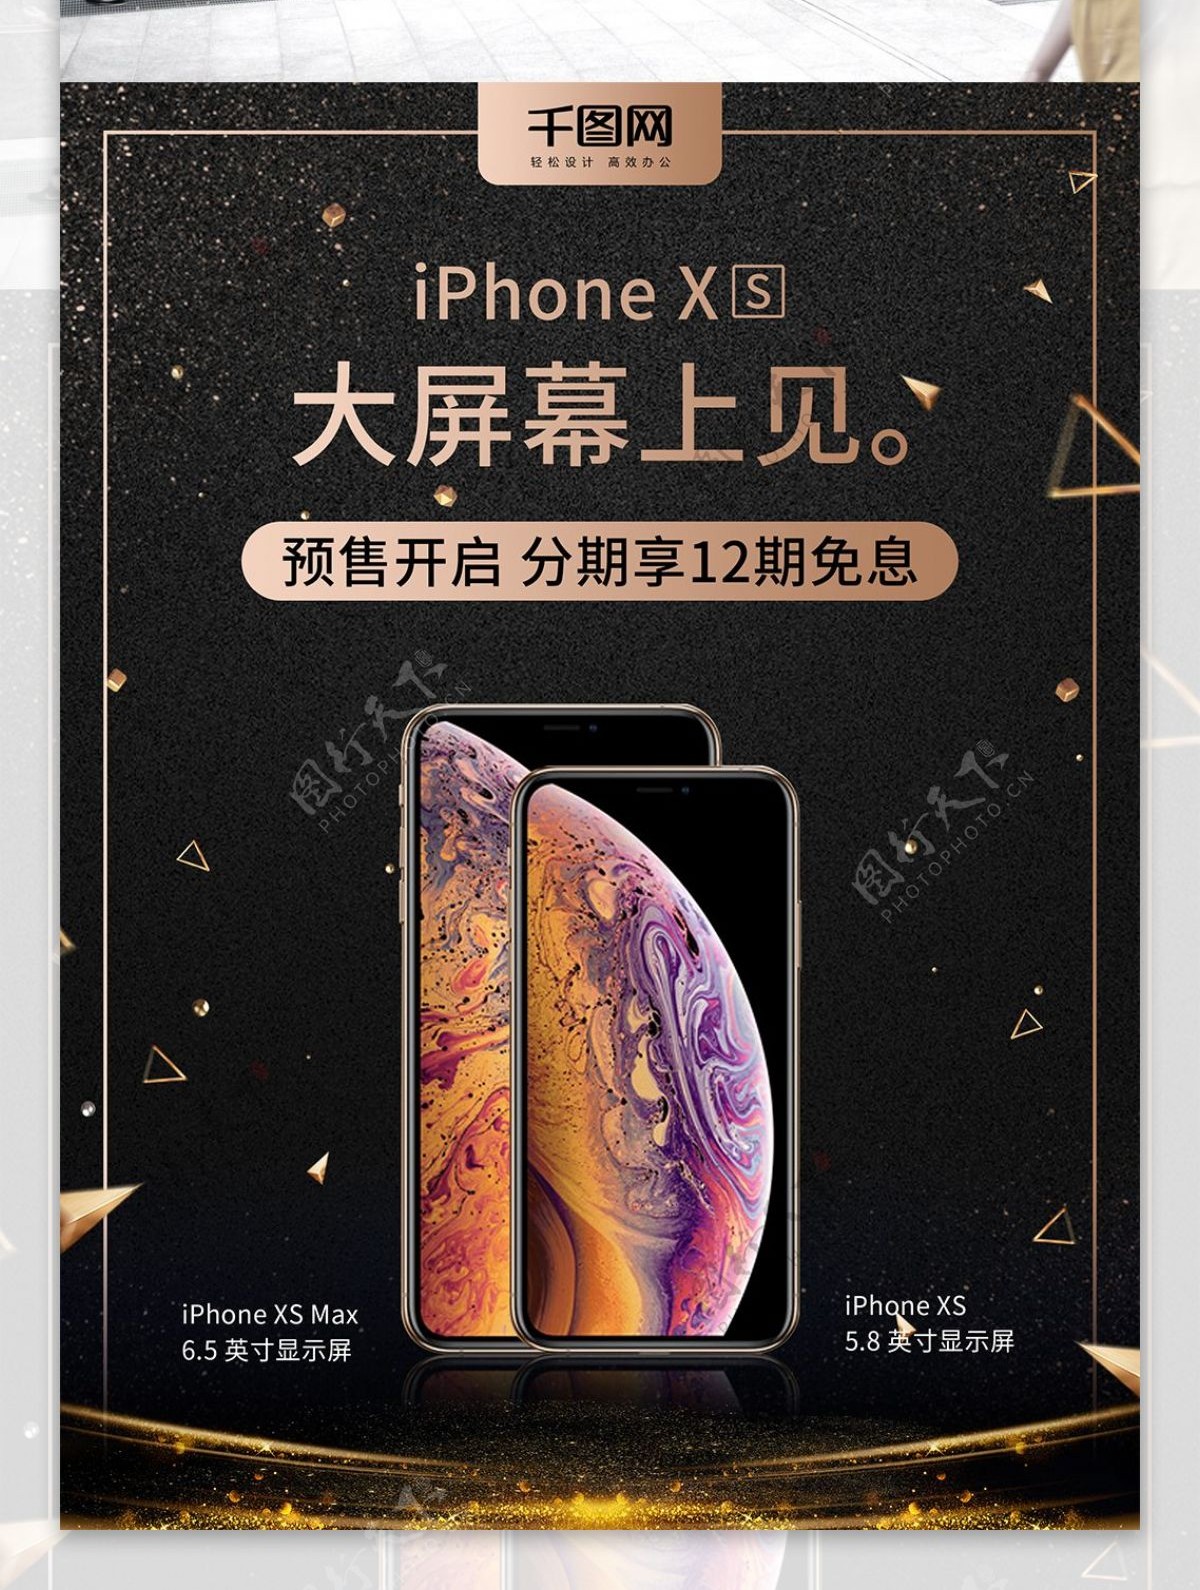 iPhoneXS新品上市促销海报